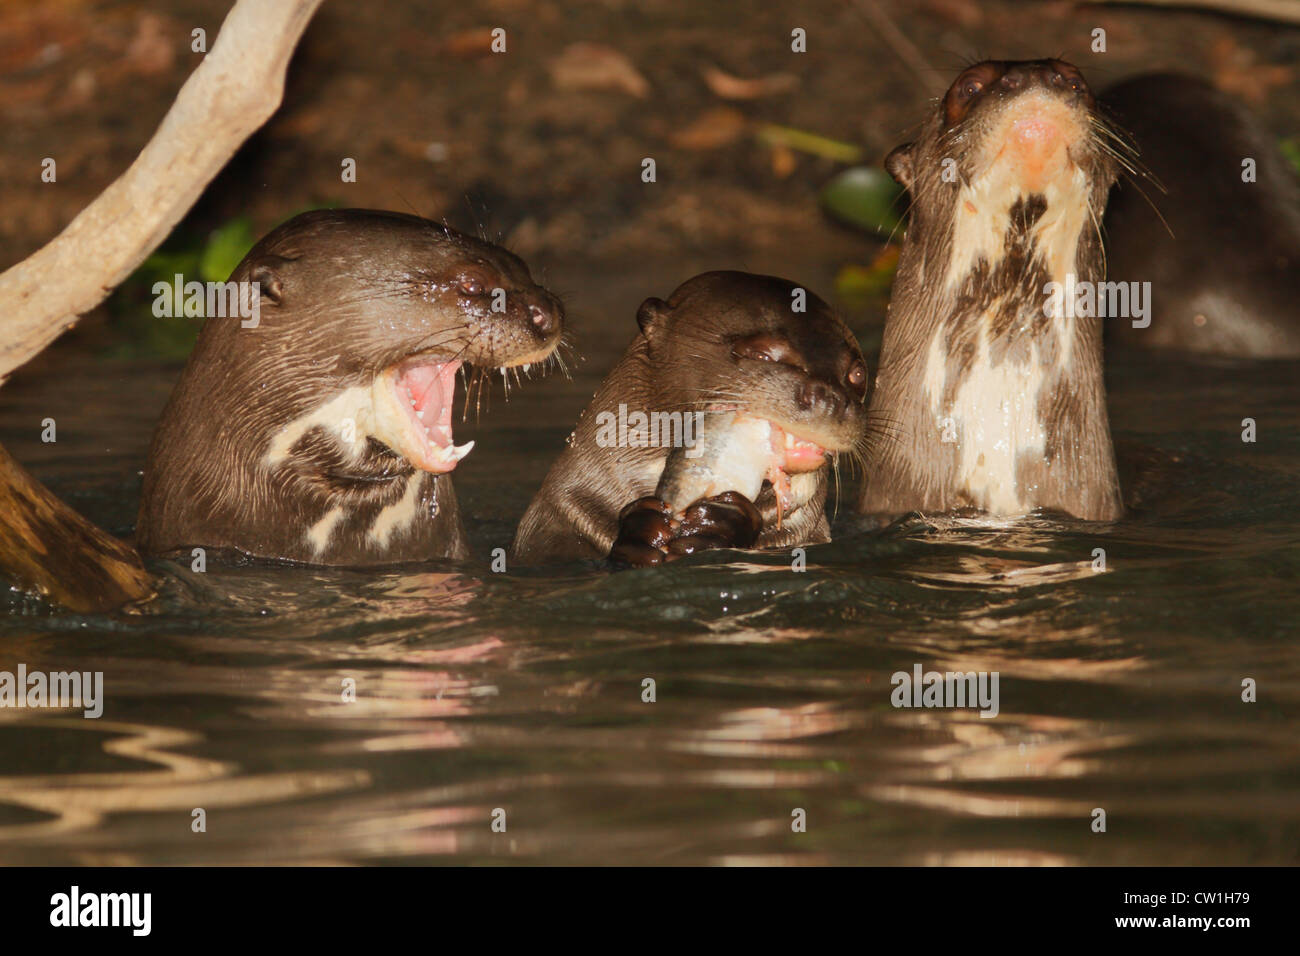 Giant river otter family in Pantanal, Brazil Stock Photo